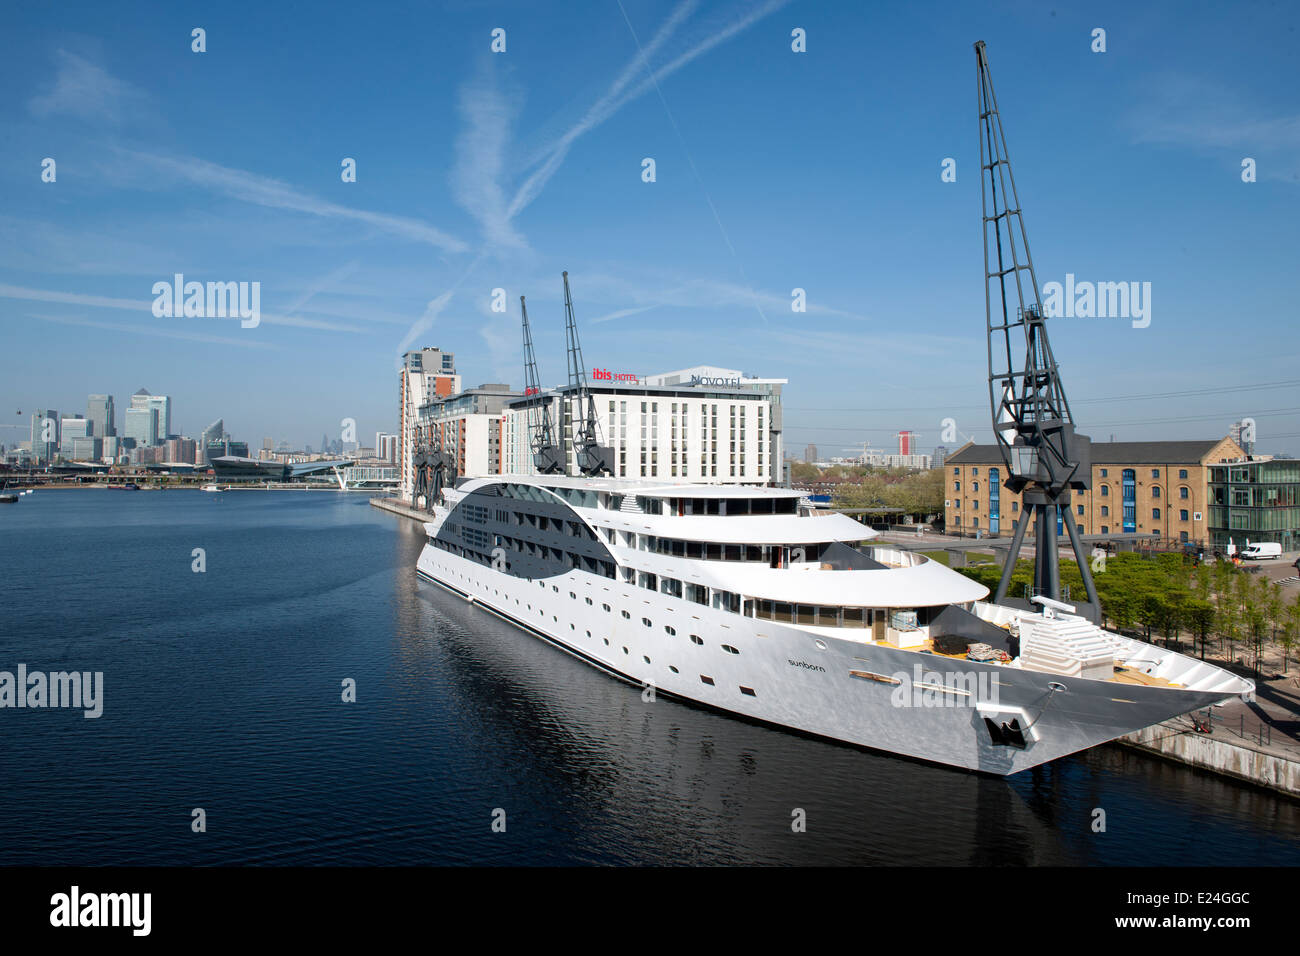 Le Sunborn hôtel flottant, Royal Victoria Dock, London. Banque D'Images